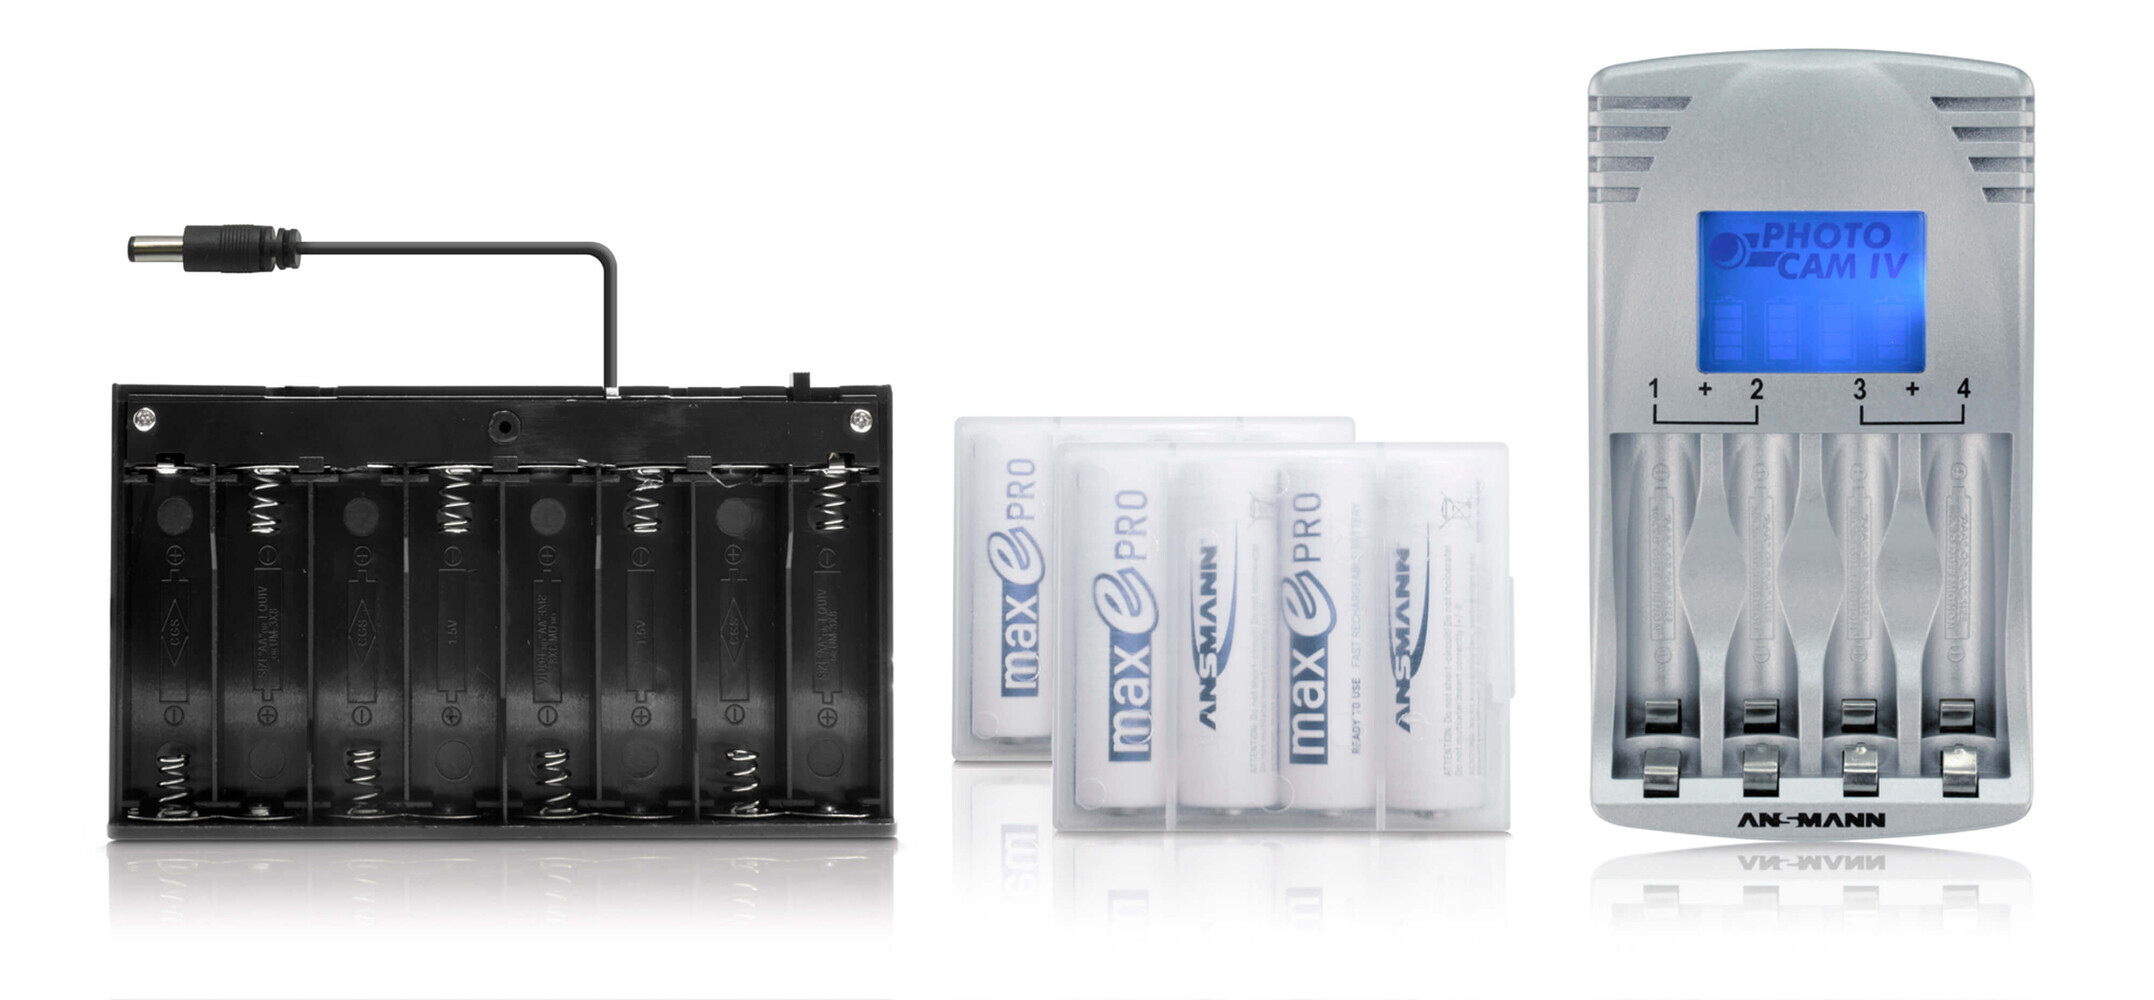 LED Universum Batteriebox für mobile LED Anwendungen, praktisch und zuverlässig